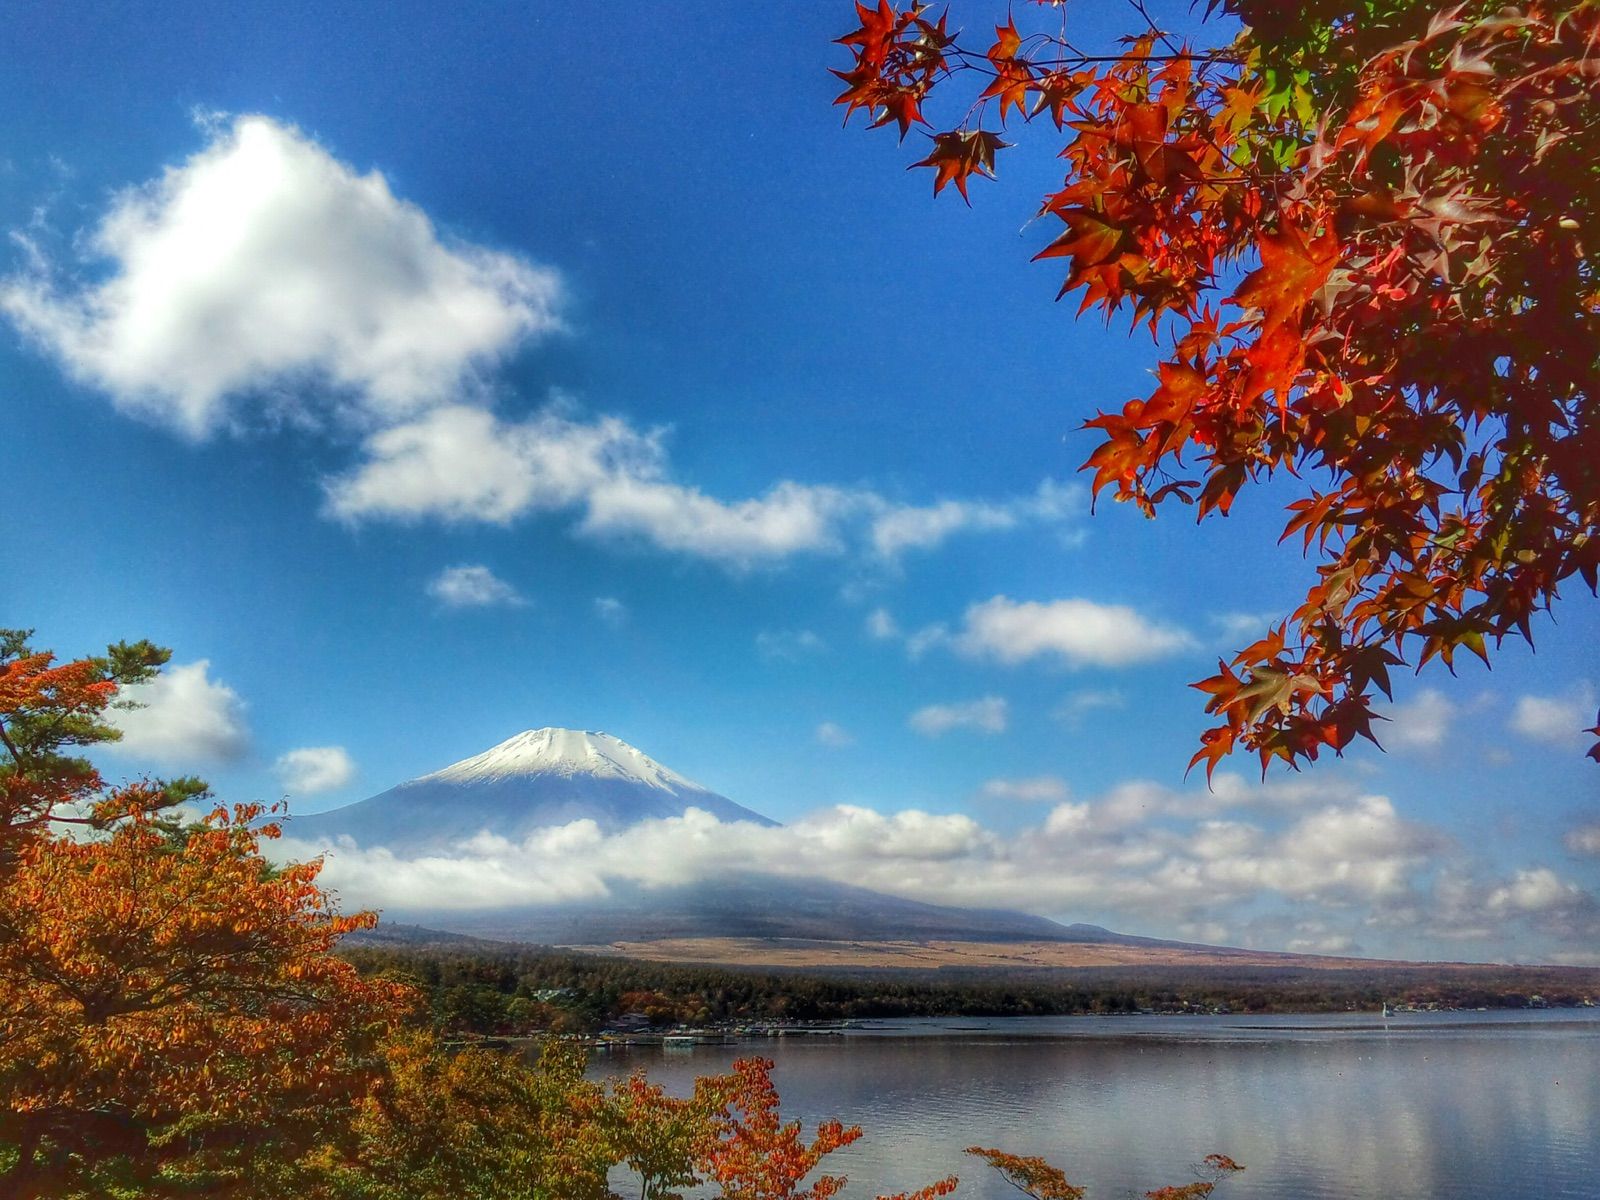 発売モデル 世界遺産 富士山とチューリップ畑 写真 A4又は2L版 額付き